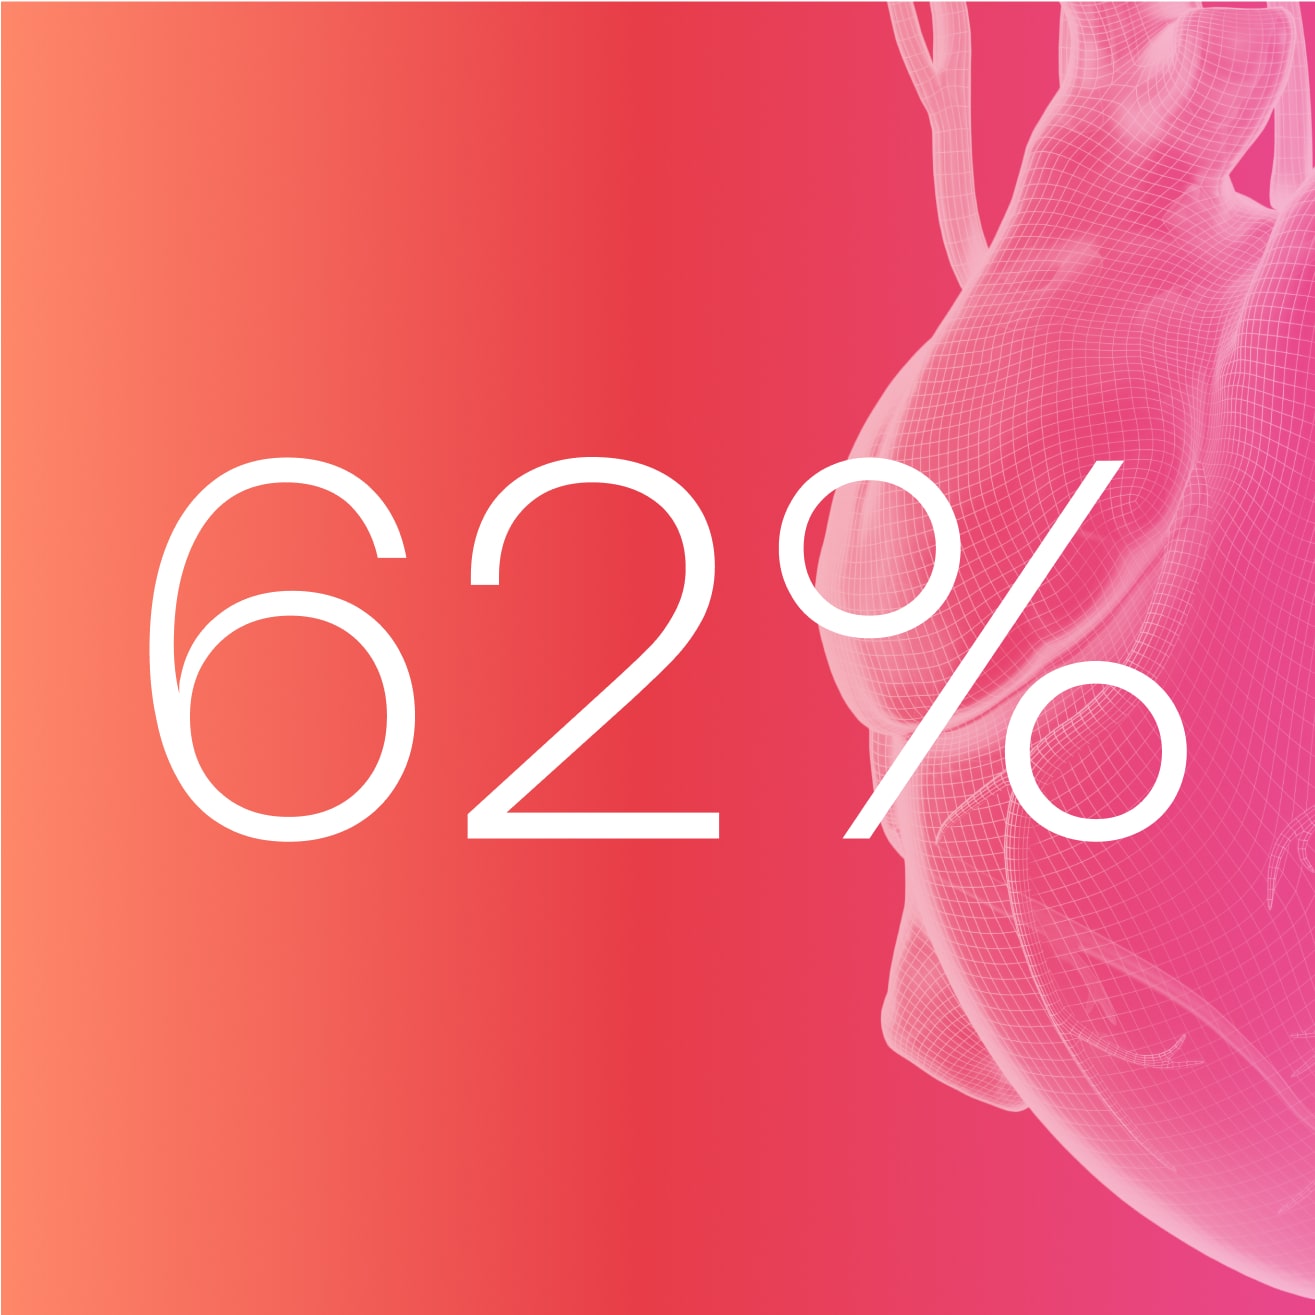 62 % der Frauen mit Bluthochdruck wissen nicht, dass sie betroffen sind⁵ Image